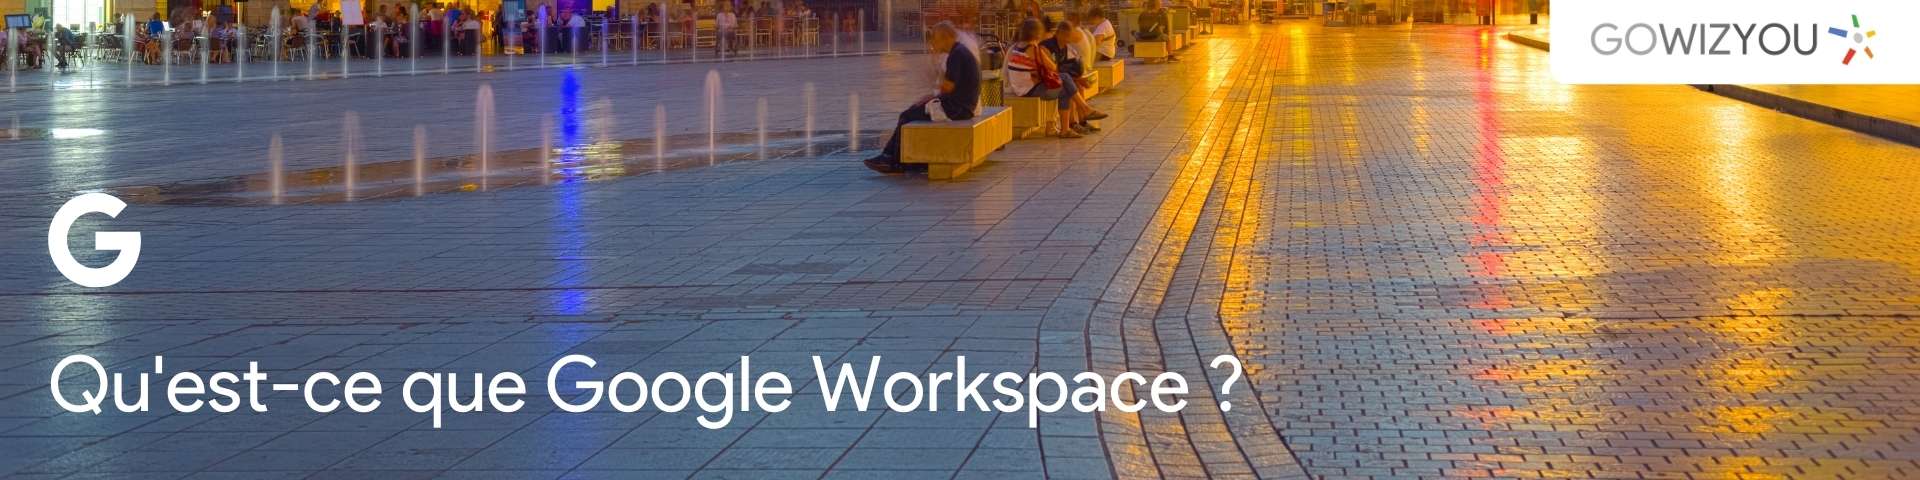 Qu'est-ce que Google Workspace ?